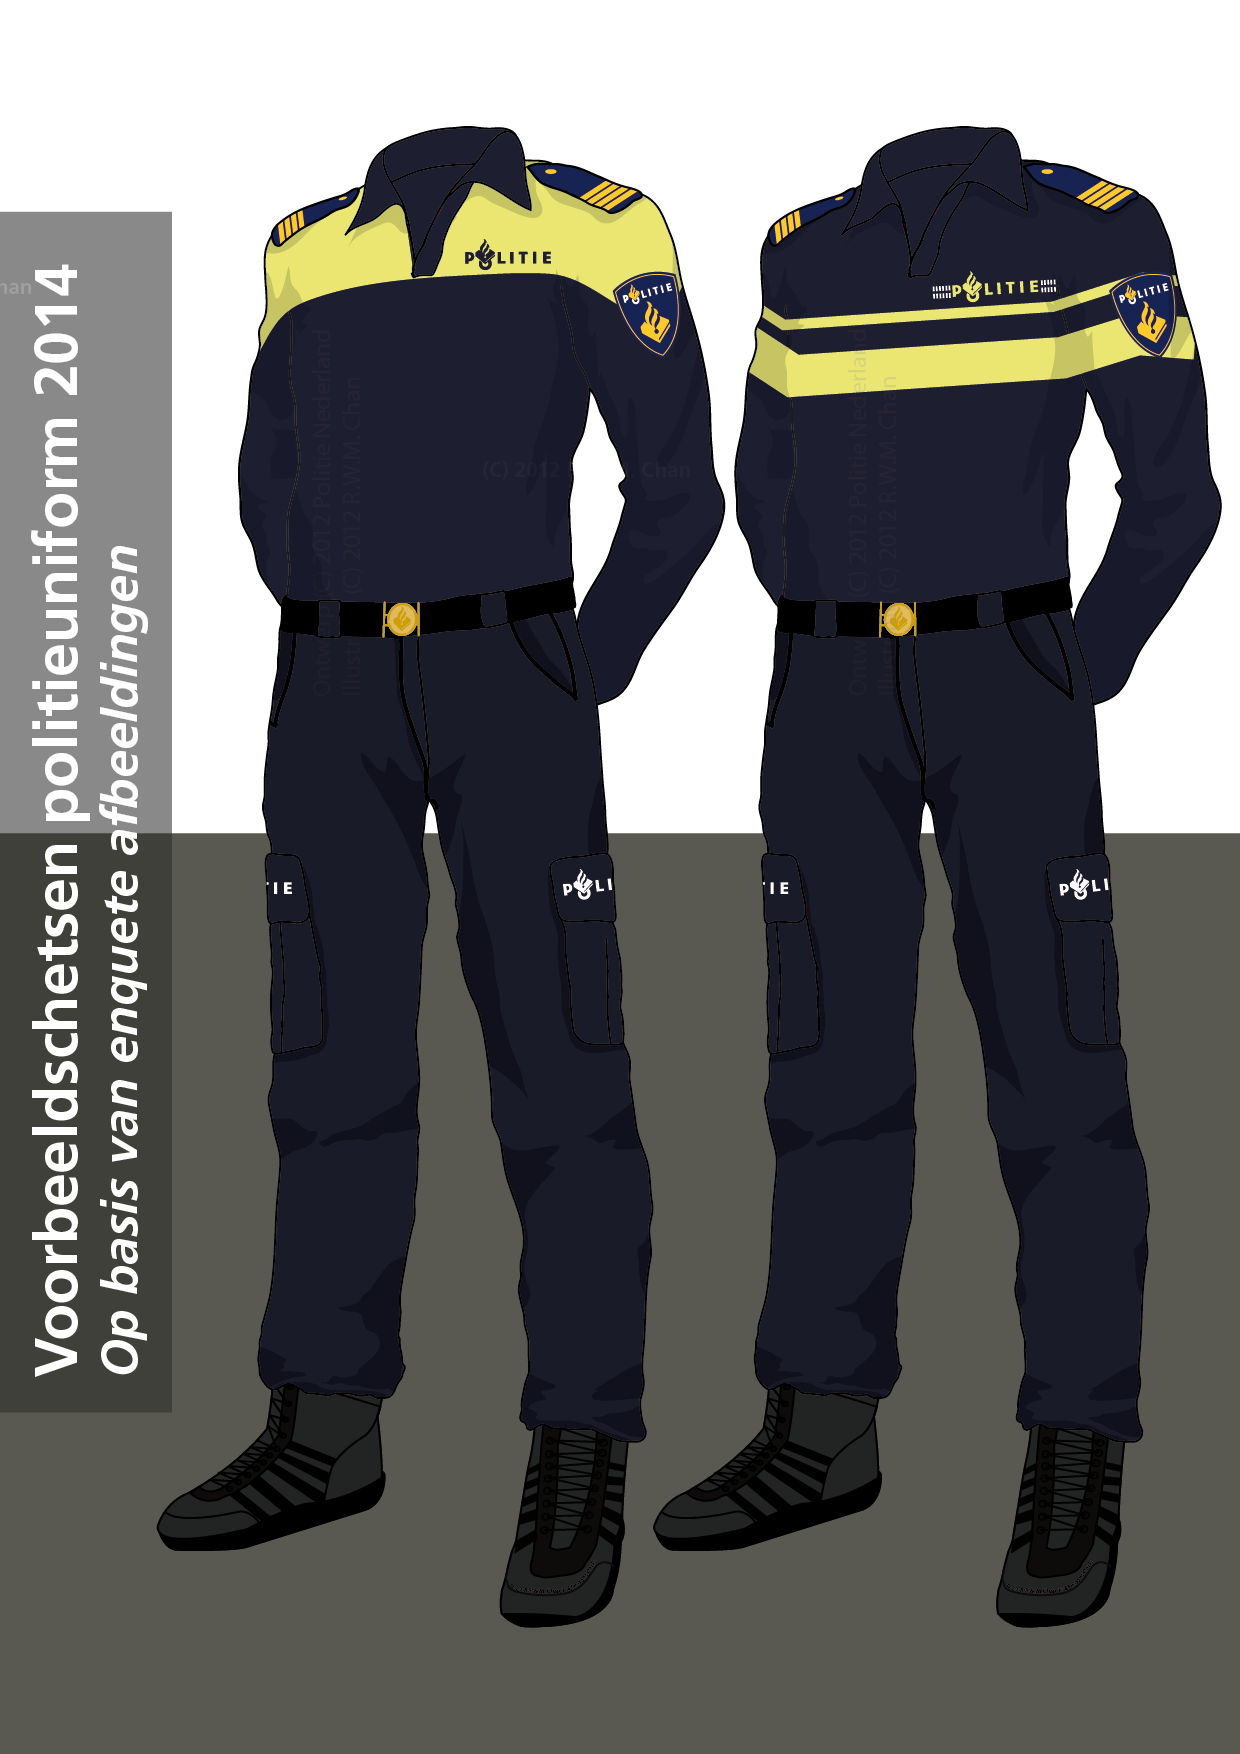 Bestand:Politie 2014 Concept Voorbeeldtekening.png - Wikipedia